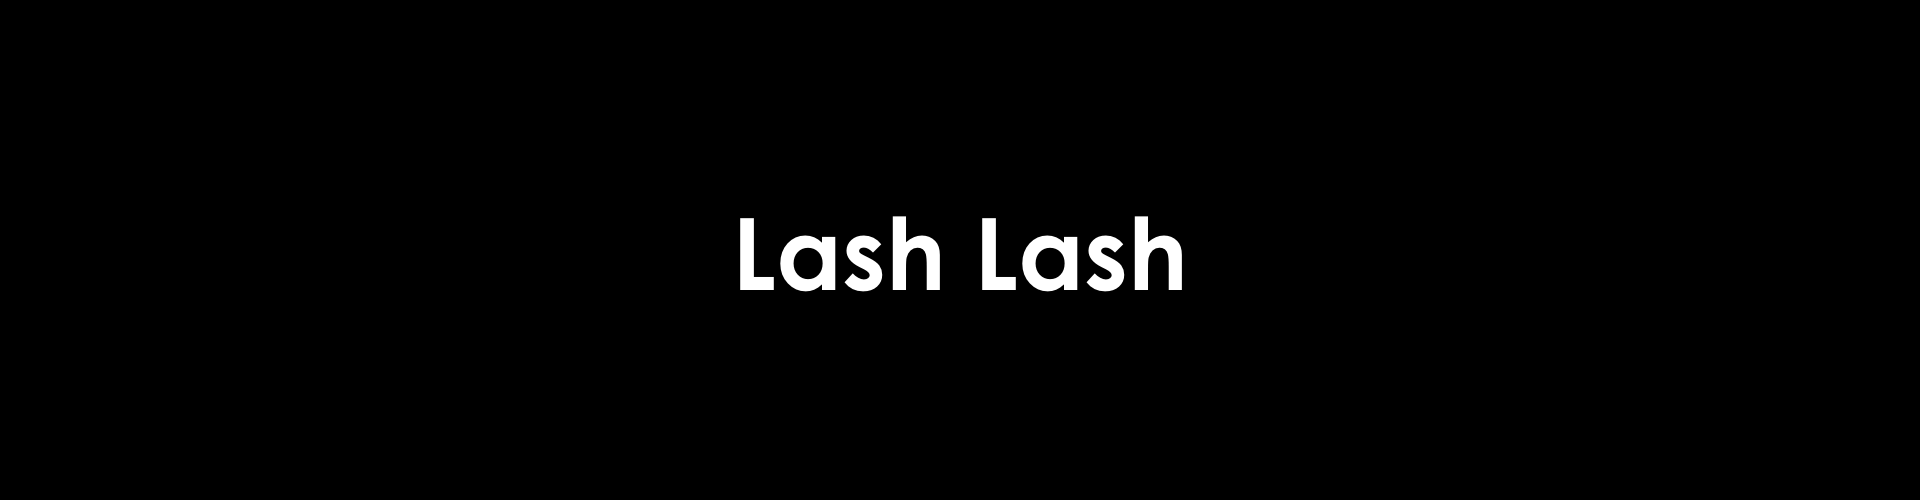 Lash Lashカテゴリーページ